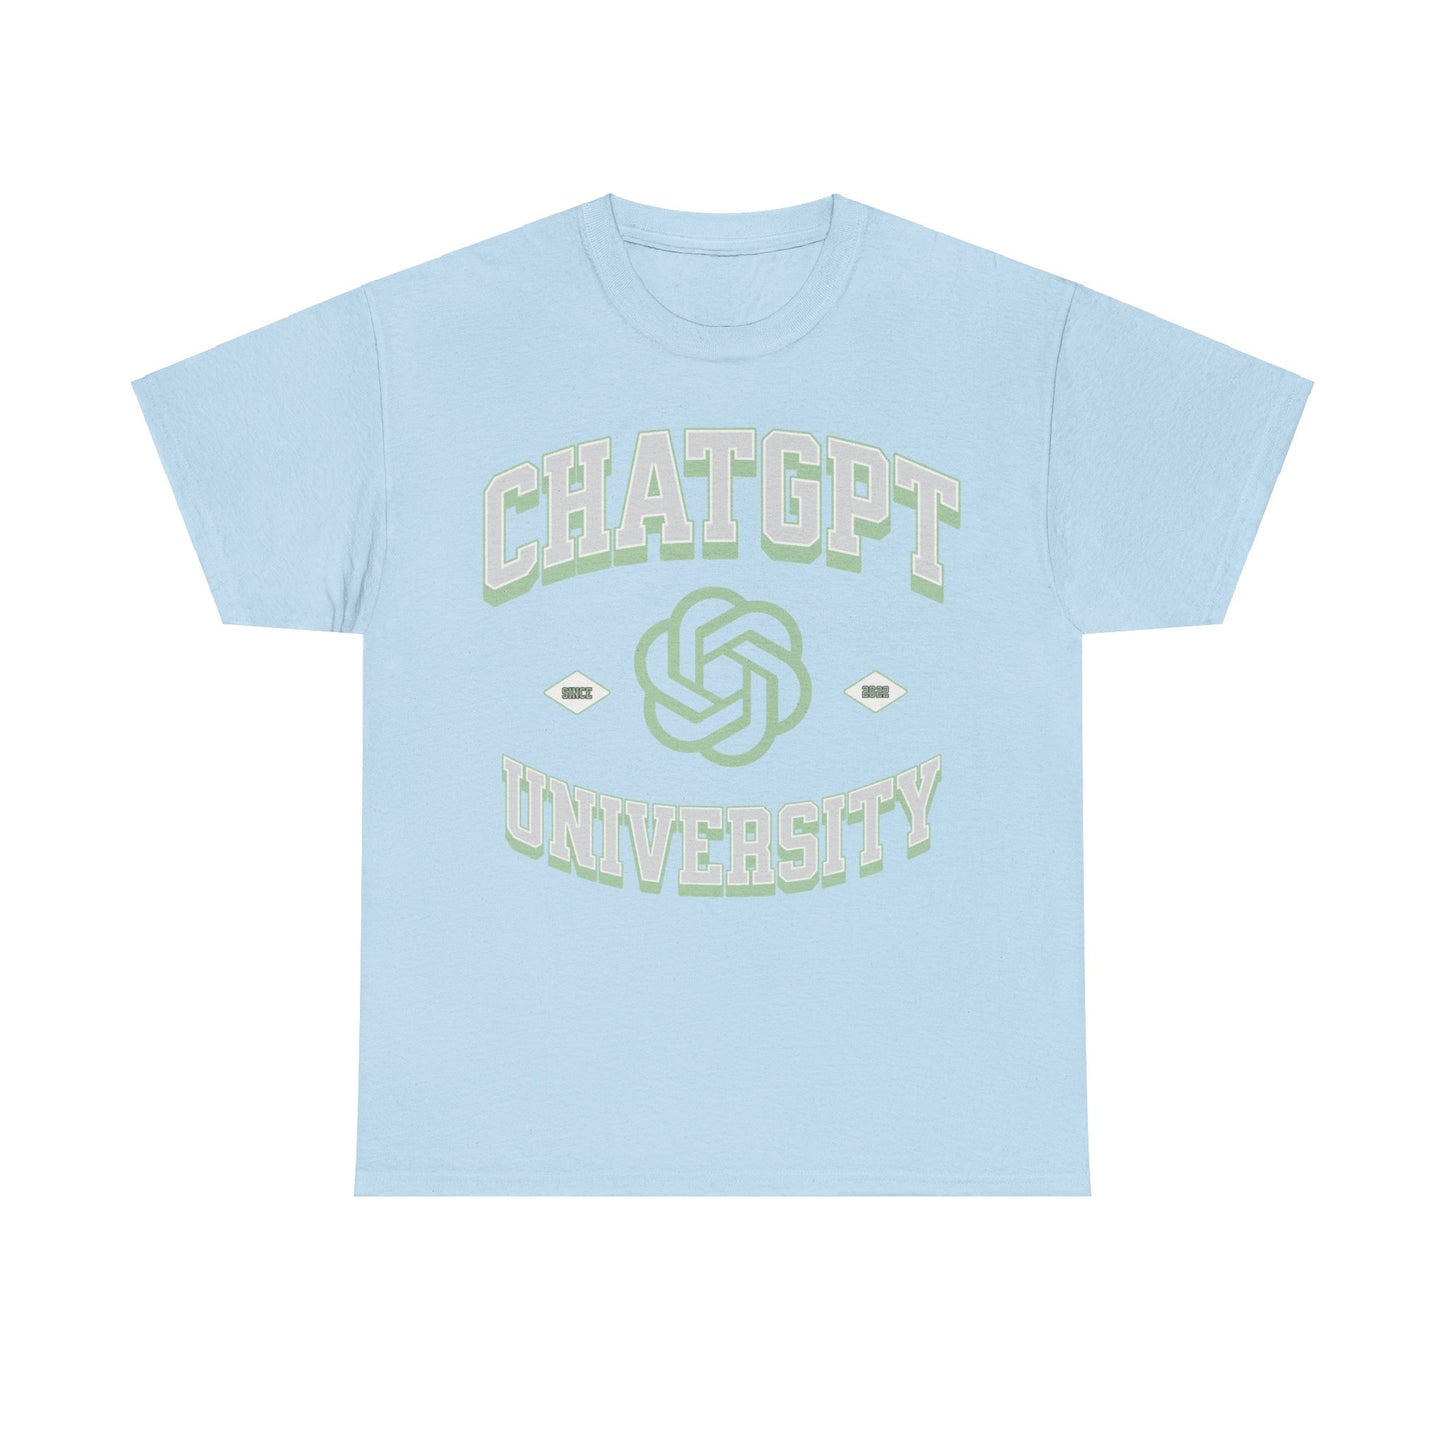 Entdecken Sie das einzigartige GPT Universität T-Shirt mit der kultigen "ChatGPT" Aufschrift - das perfekte Geschenk für KI-Enthusiasten und Tech-Nerds. Dieses hochwertige Shirt ist ein Muss für alle, die die revolutionäre Welt der künstlichen Intelligenz und generativen KI-Modelle wie ChatGPT feiern möchten. 